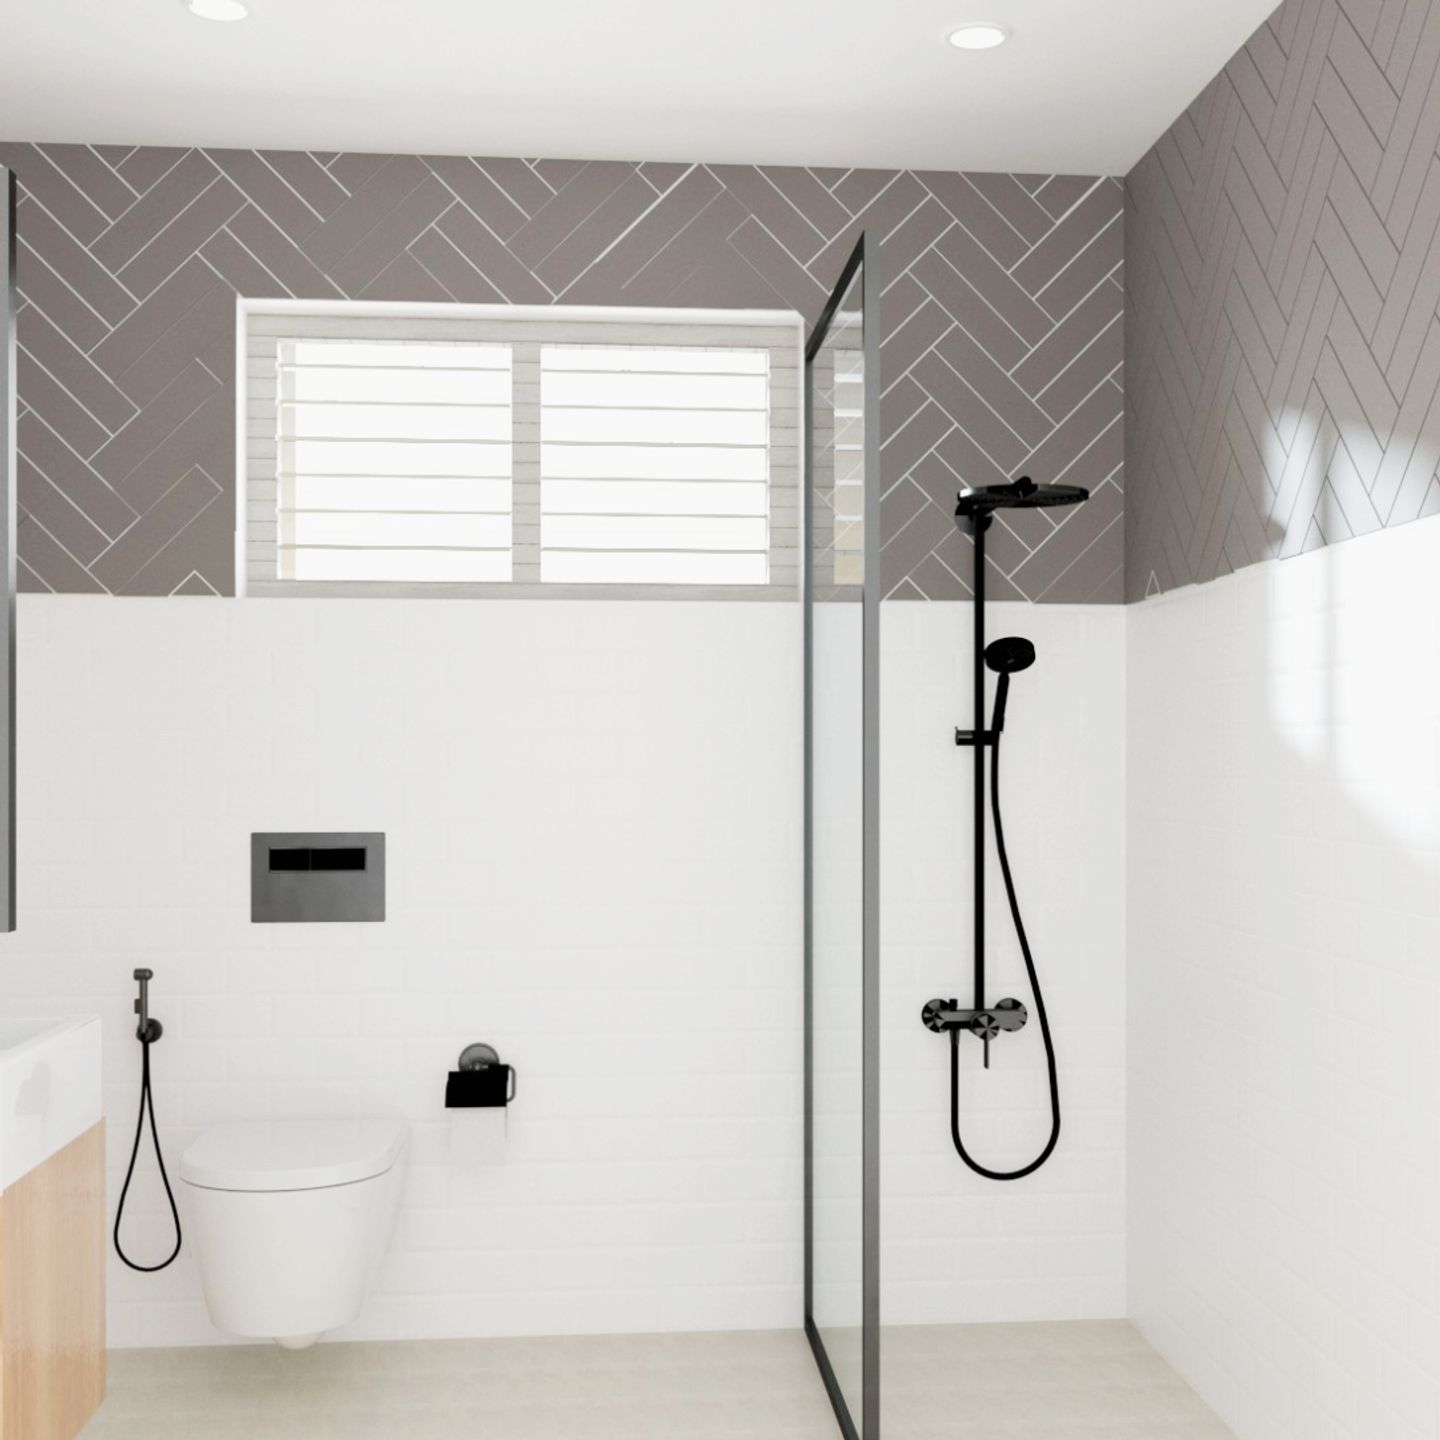 Minimal Bathroom Design - Livspace